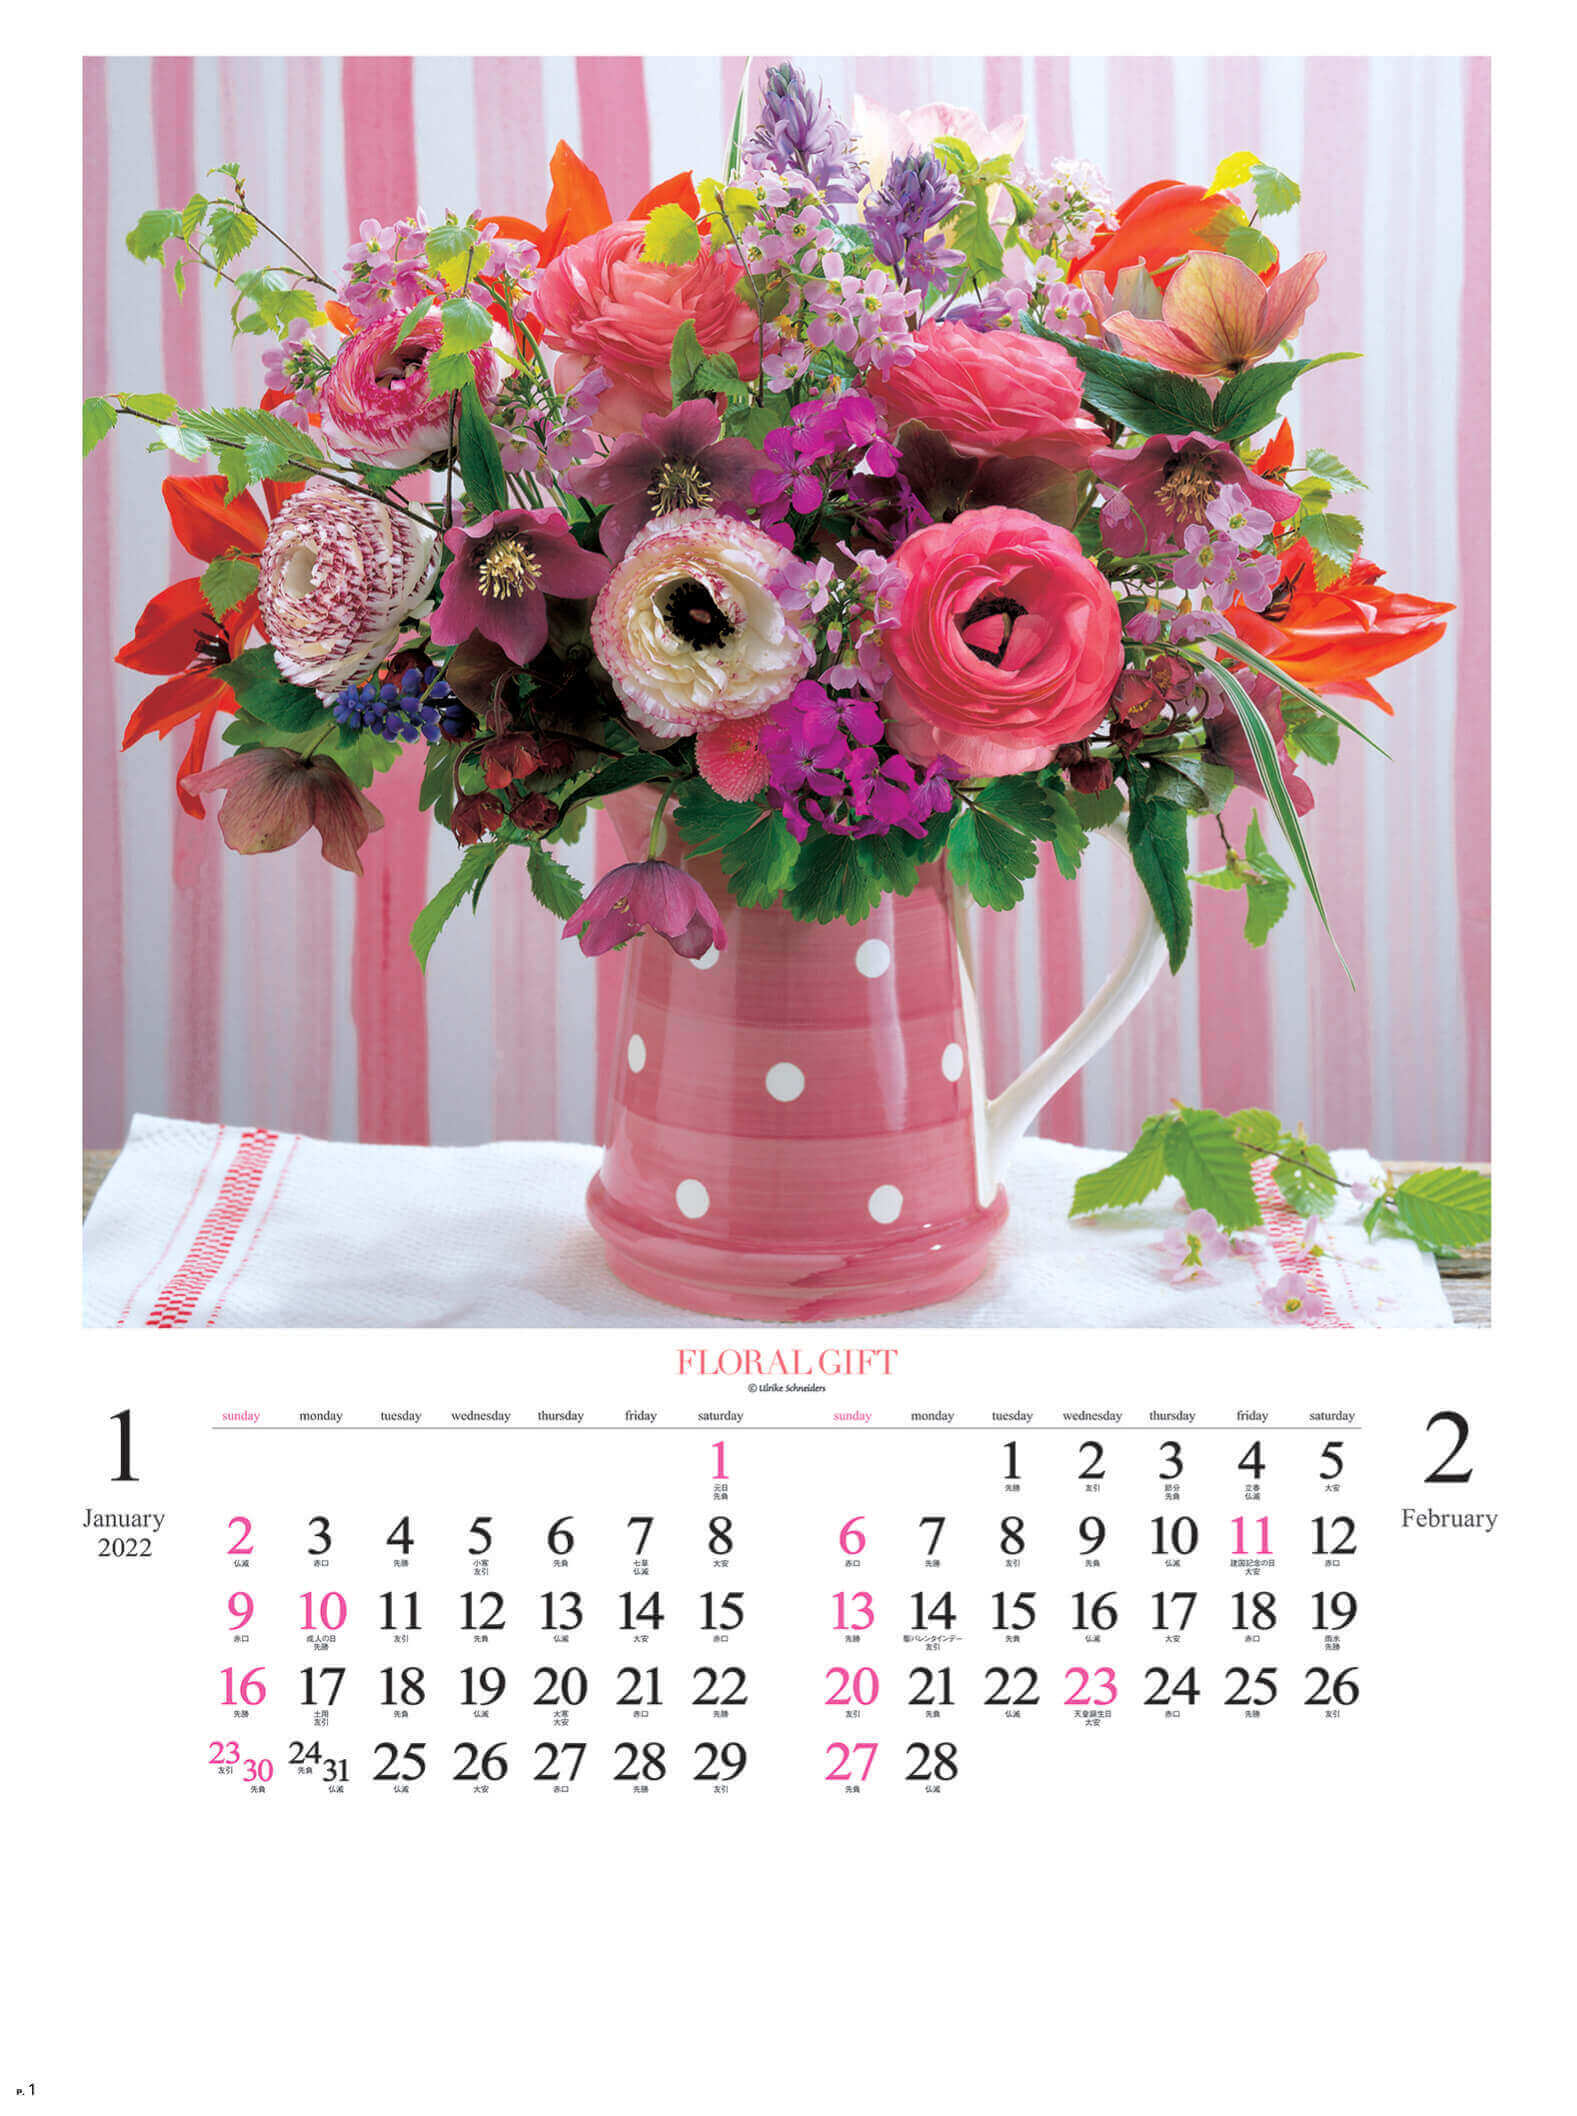  花の贈り物 2022年カレンダーの画像